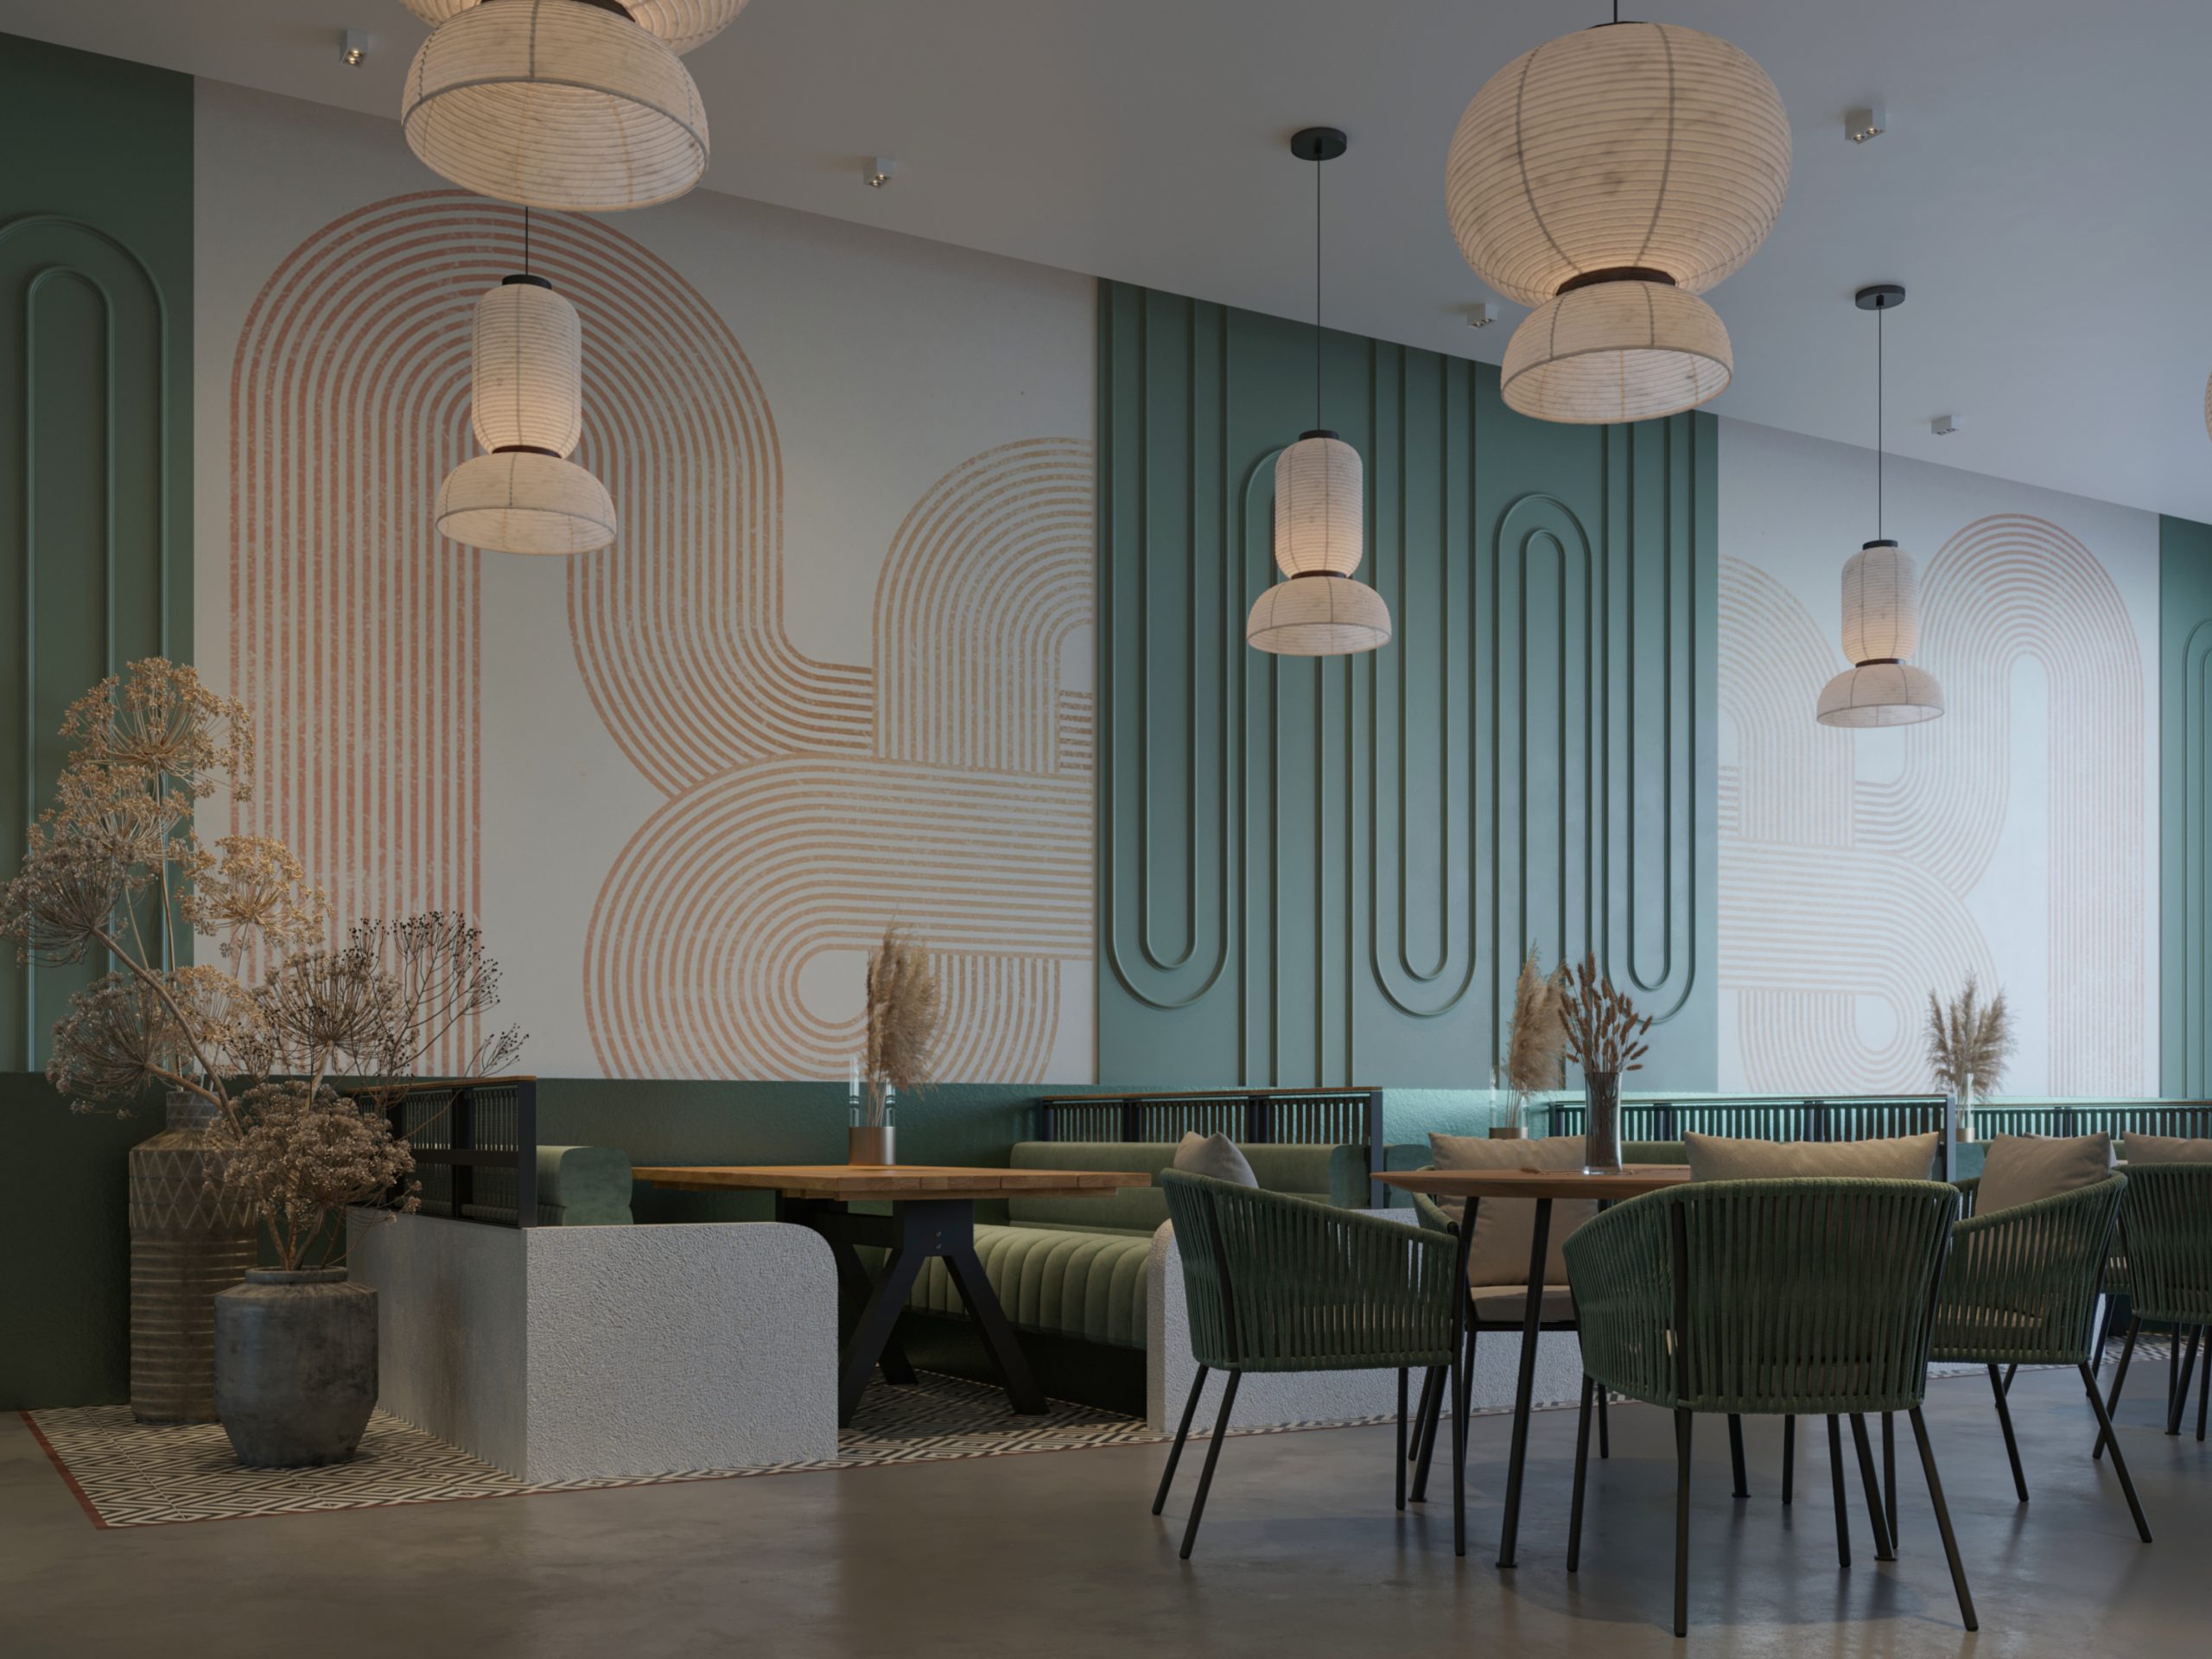 RESTURANT DESIGN IN TURQUOISE - design - interior design - turquoise - color 